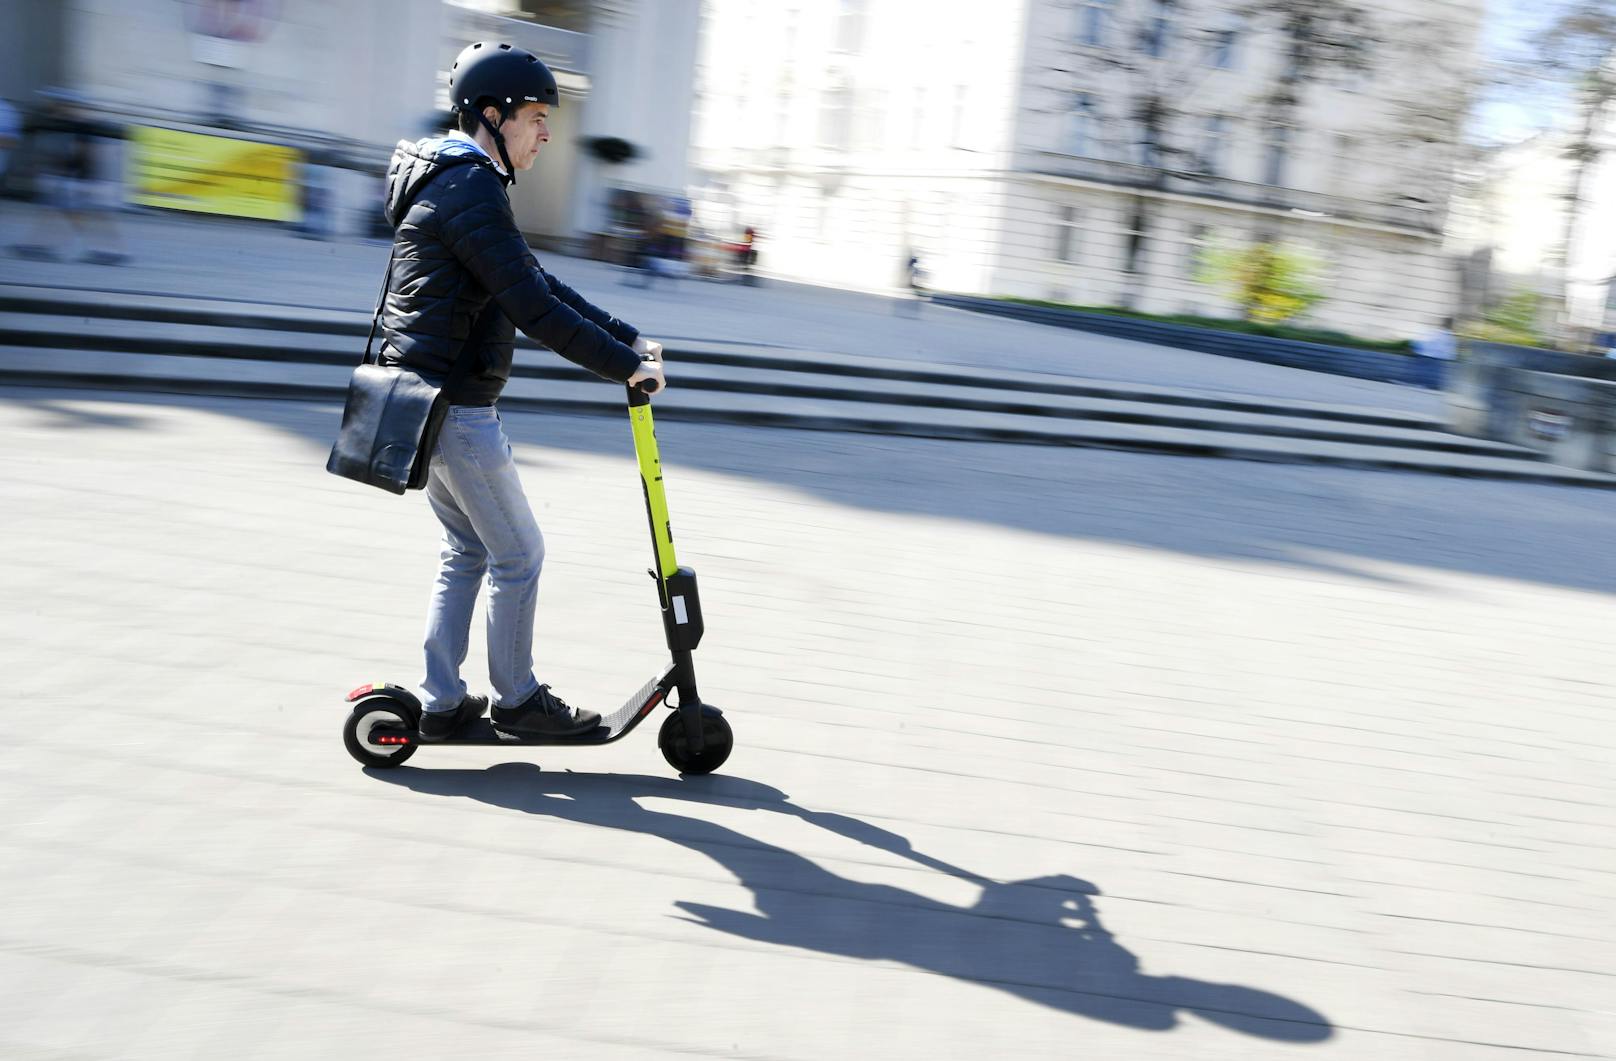 Die Unfälle mit E-Scooter nehmen in Wien immer mehr zu. (Symbolbild)